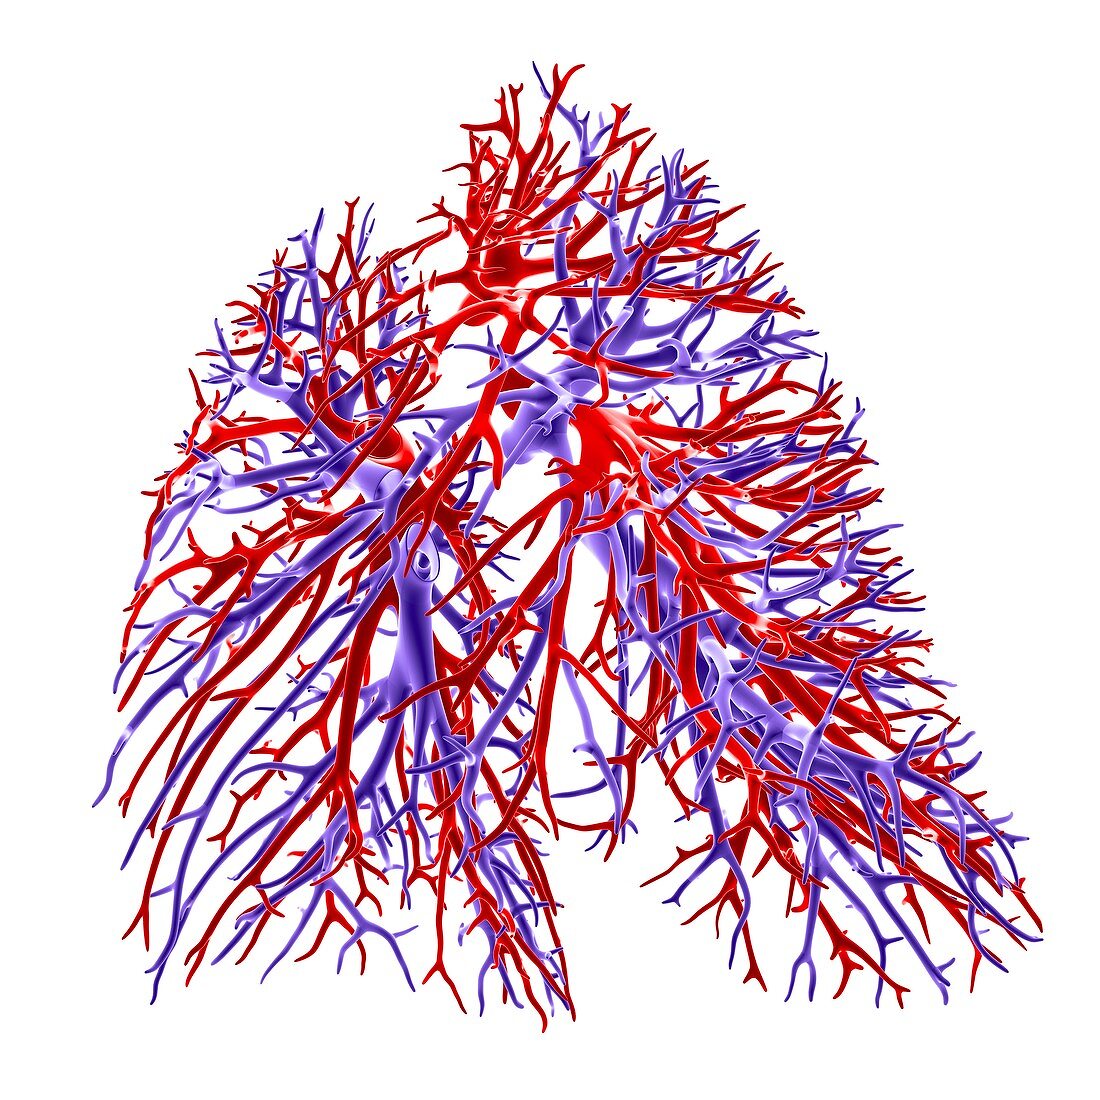 Lung blood vessel,artwork